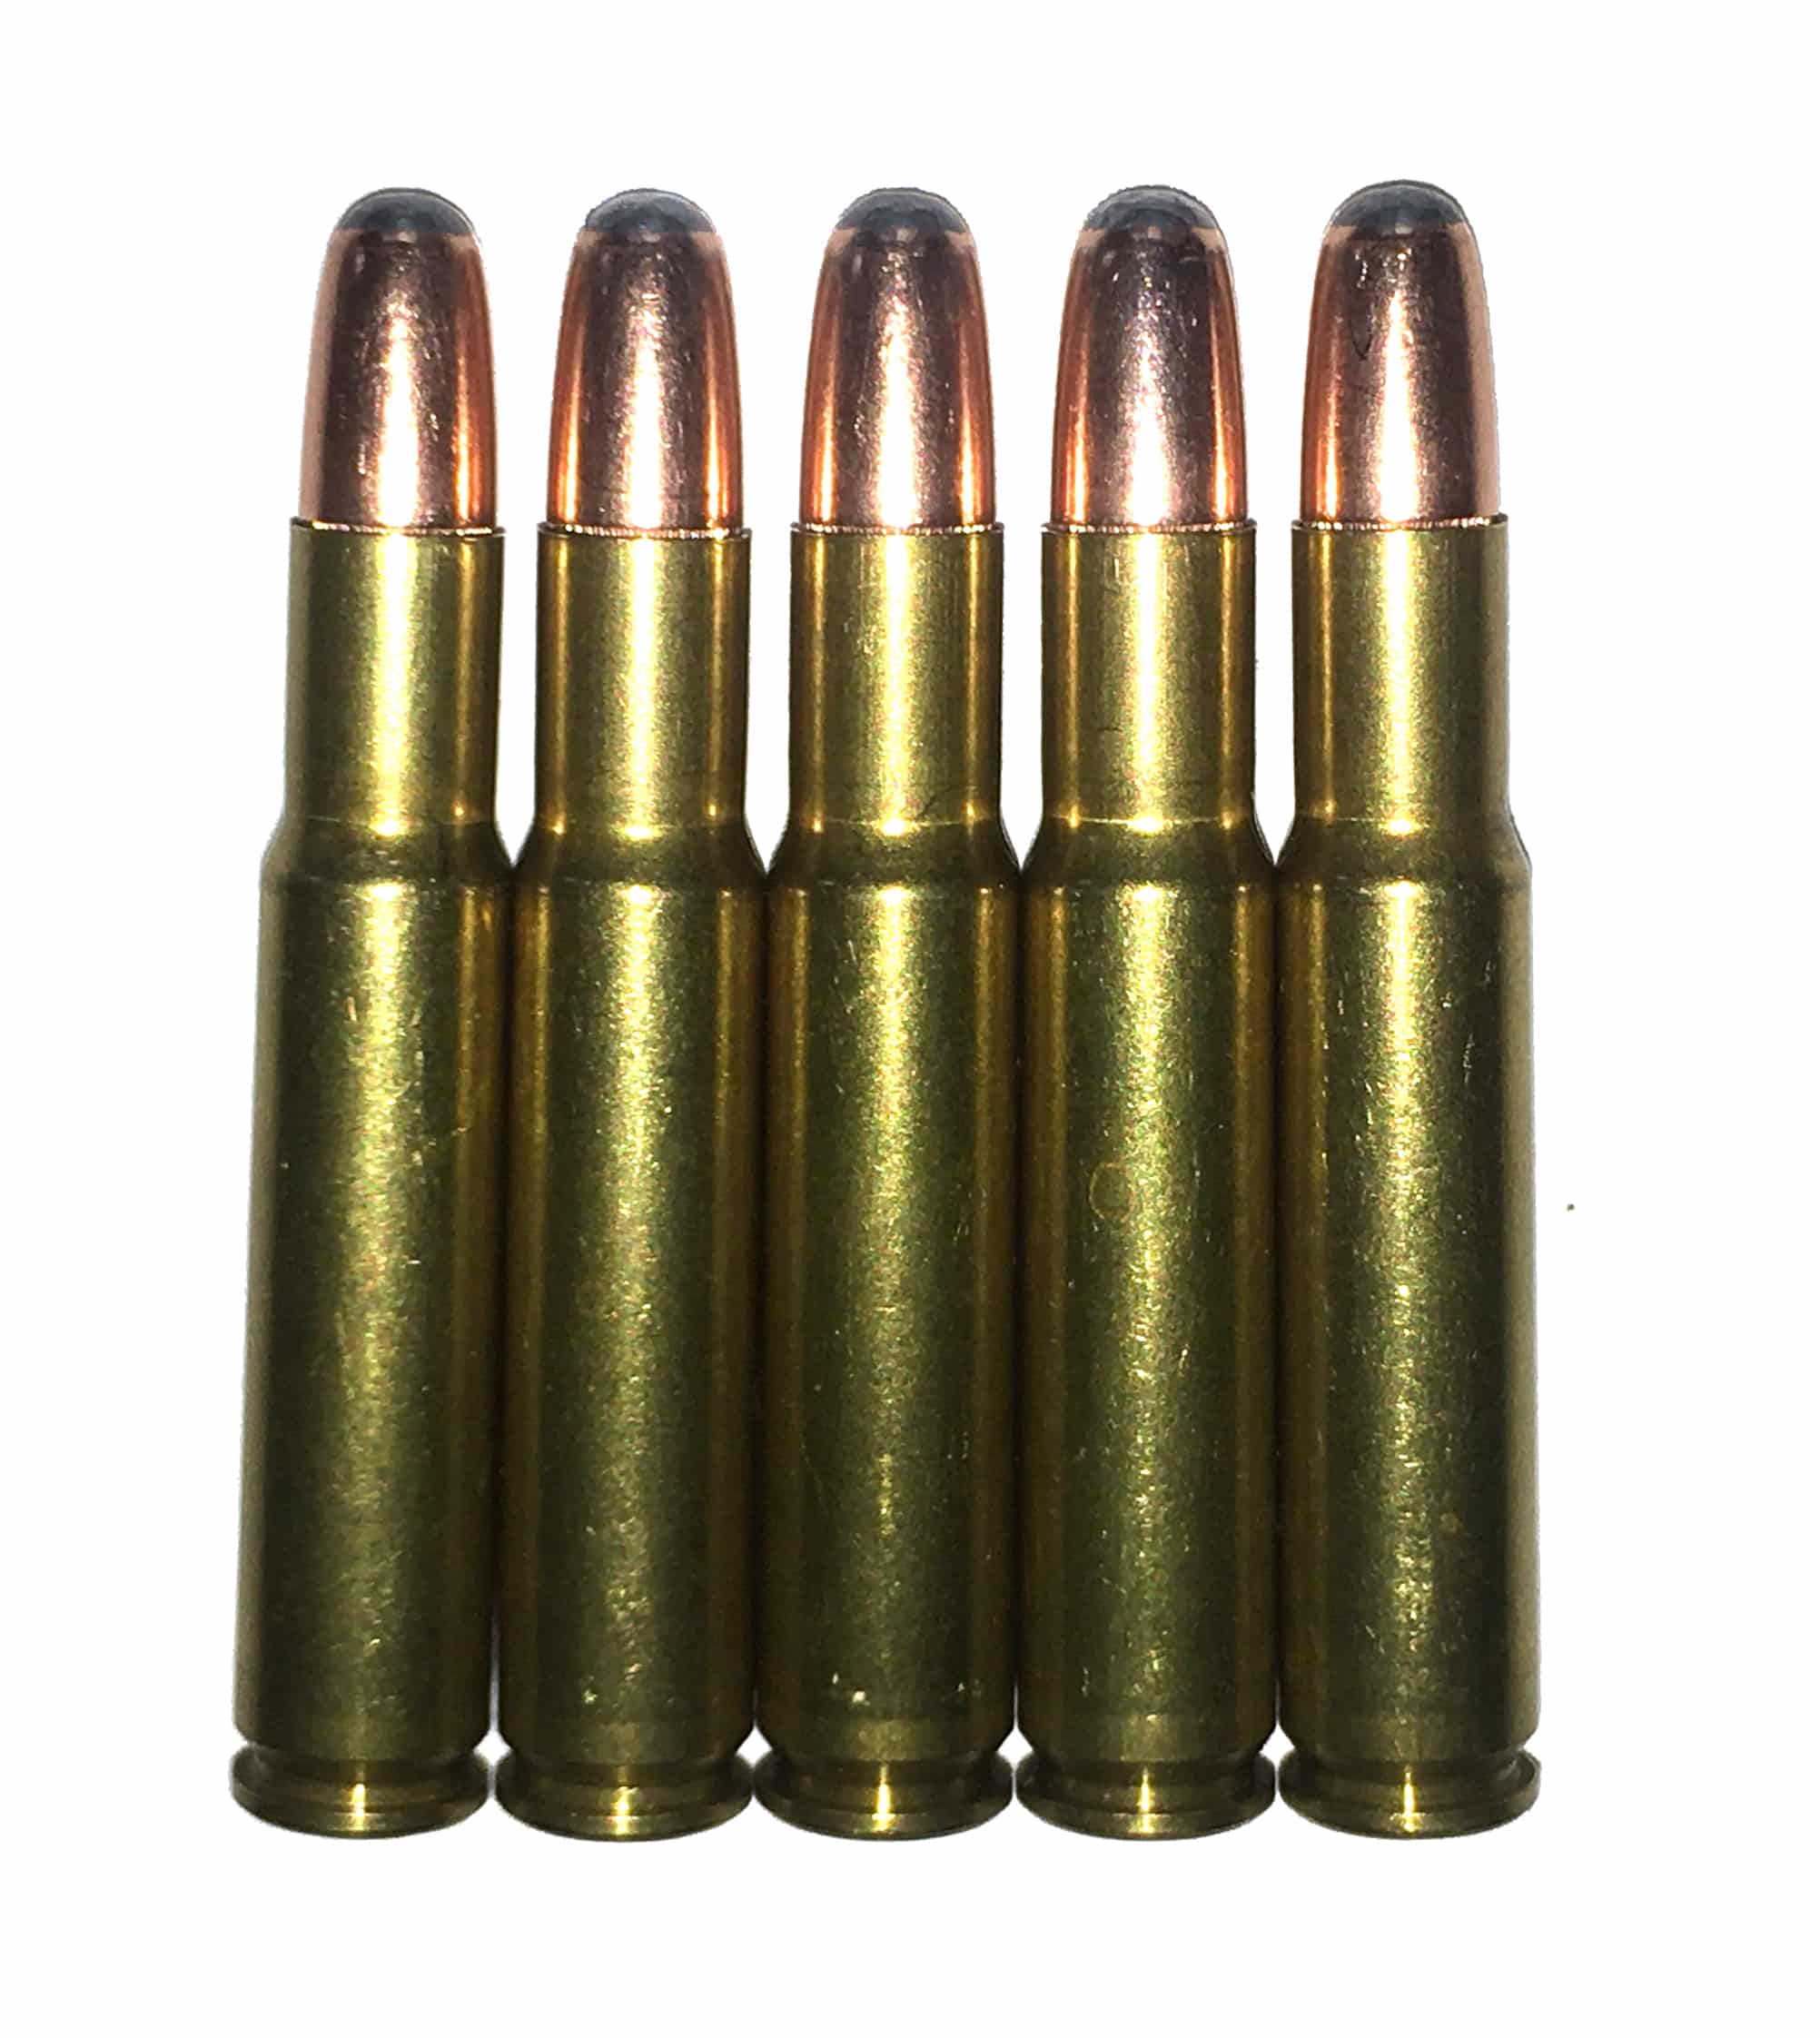 30 Remington Snap Caps Dummy Rounds Fake Bullets J&M Spec INERT